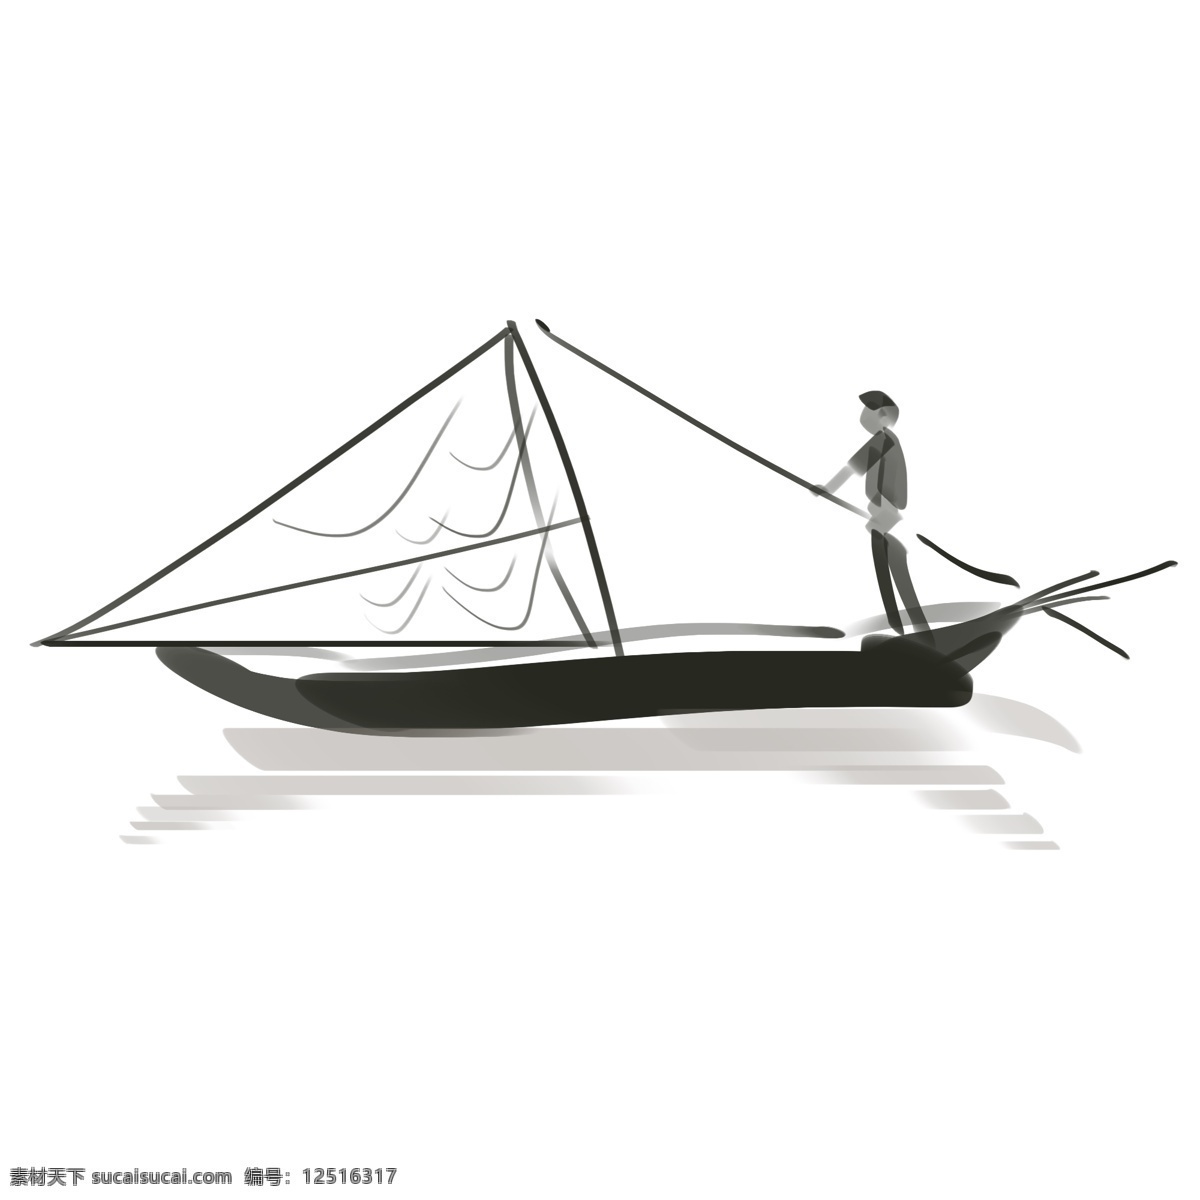 手绘 渔船 人物 插画 水墨 古风 水面 渔民 渔船插画 水墨渔船插画 小船插画